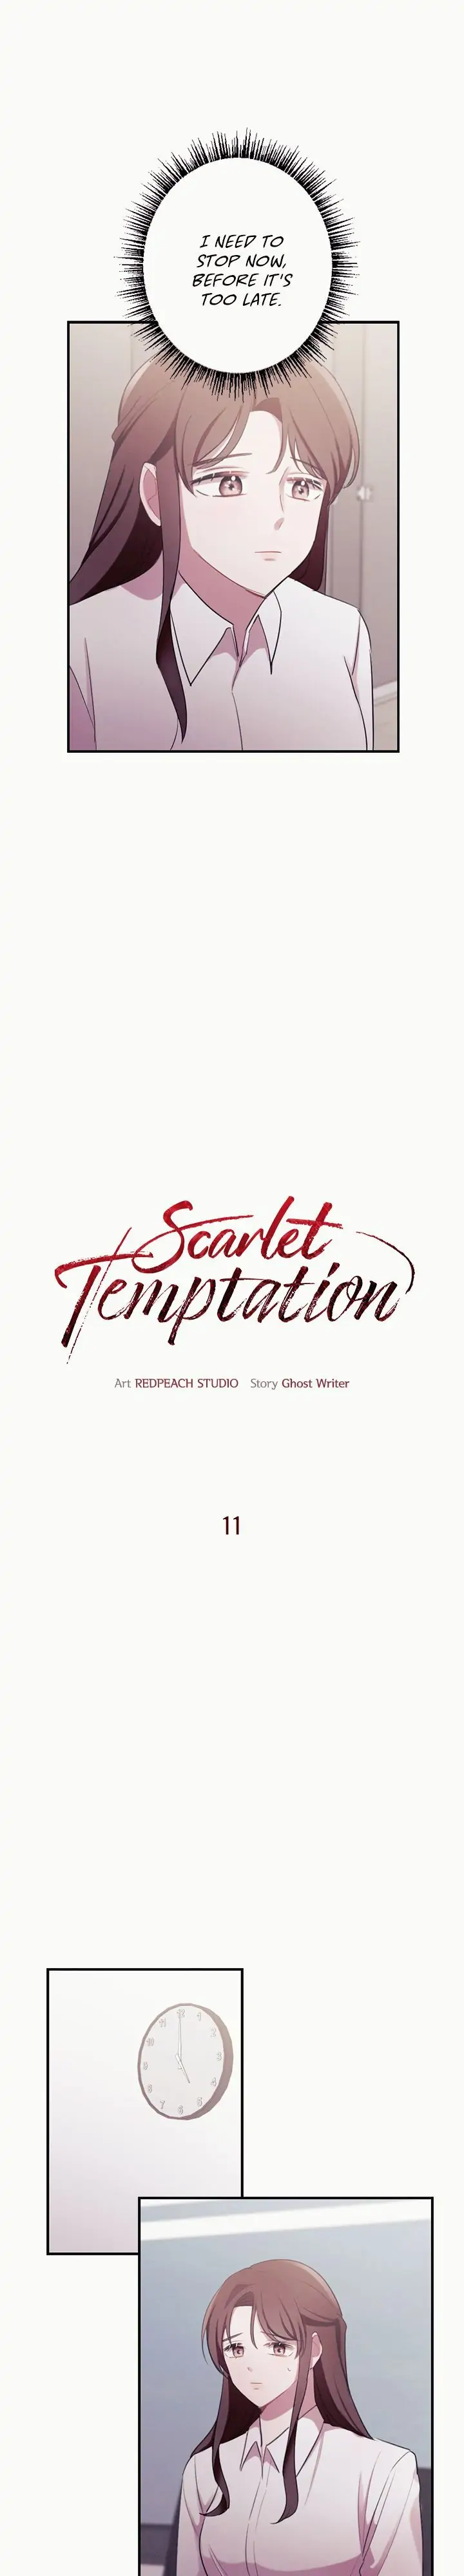 Scarlet Temptation chapter 11